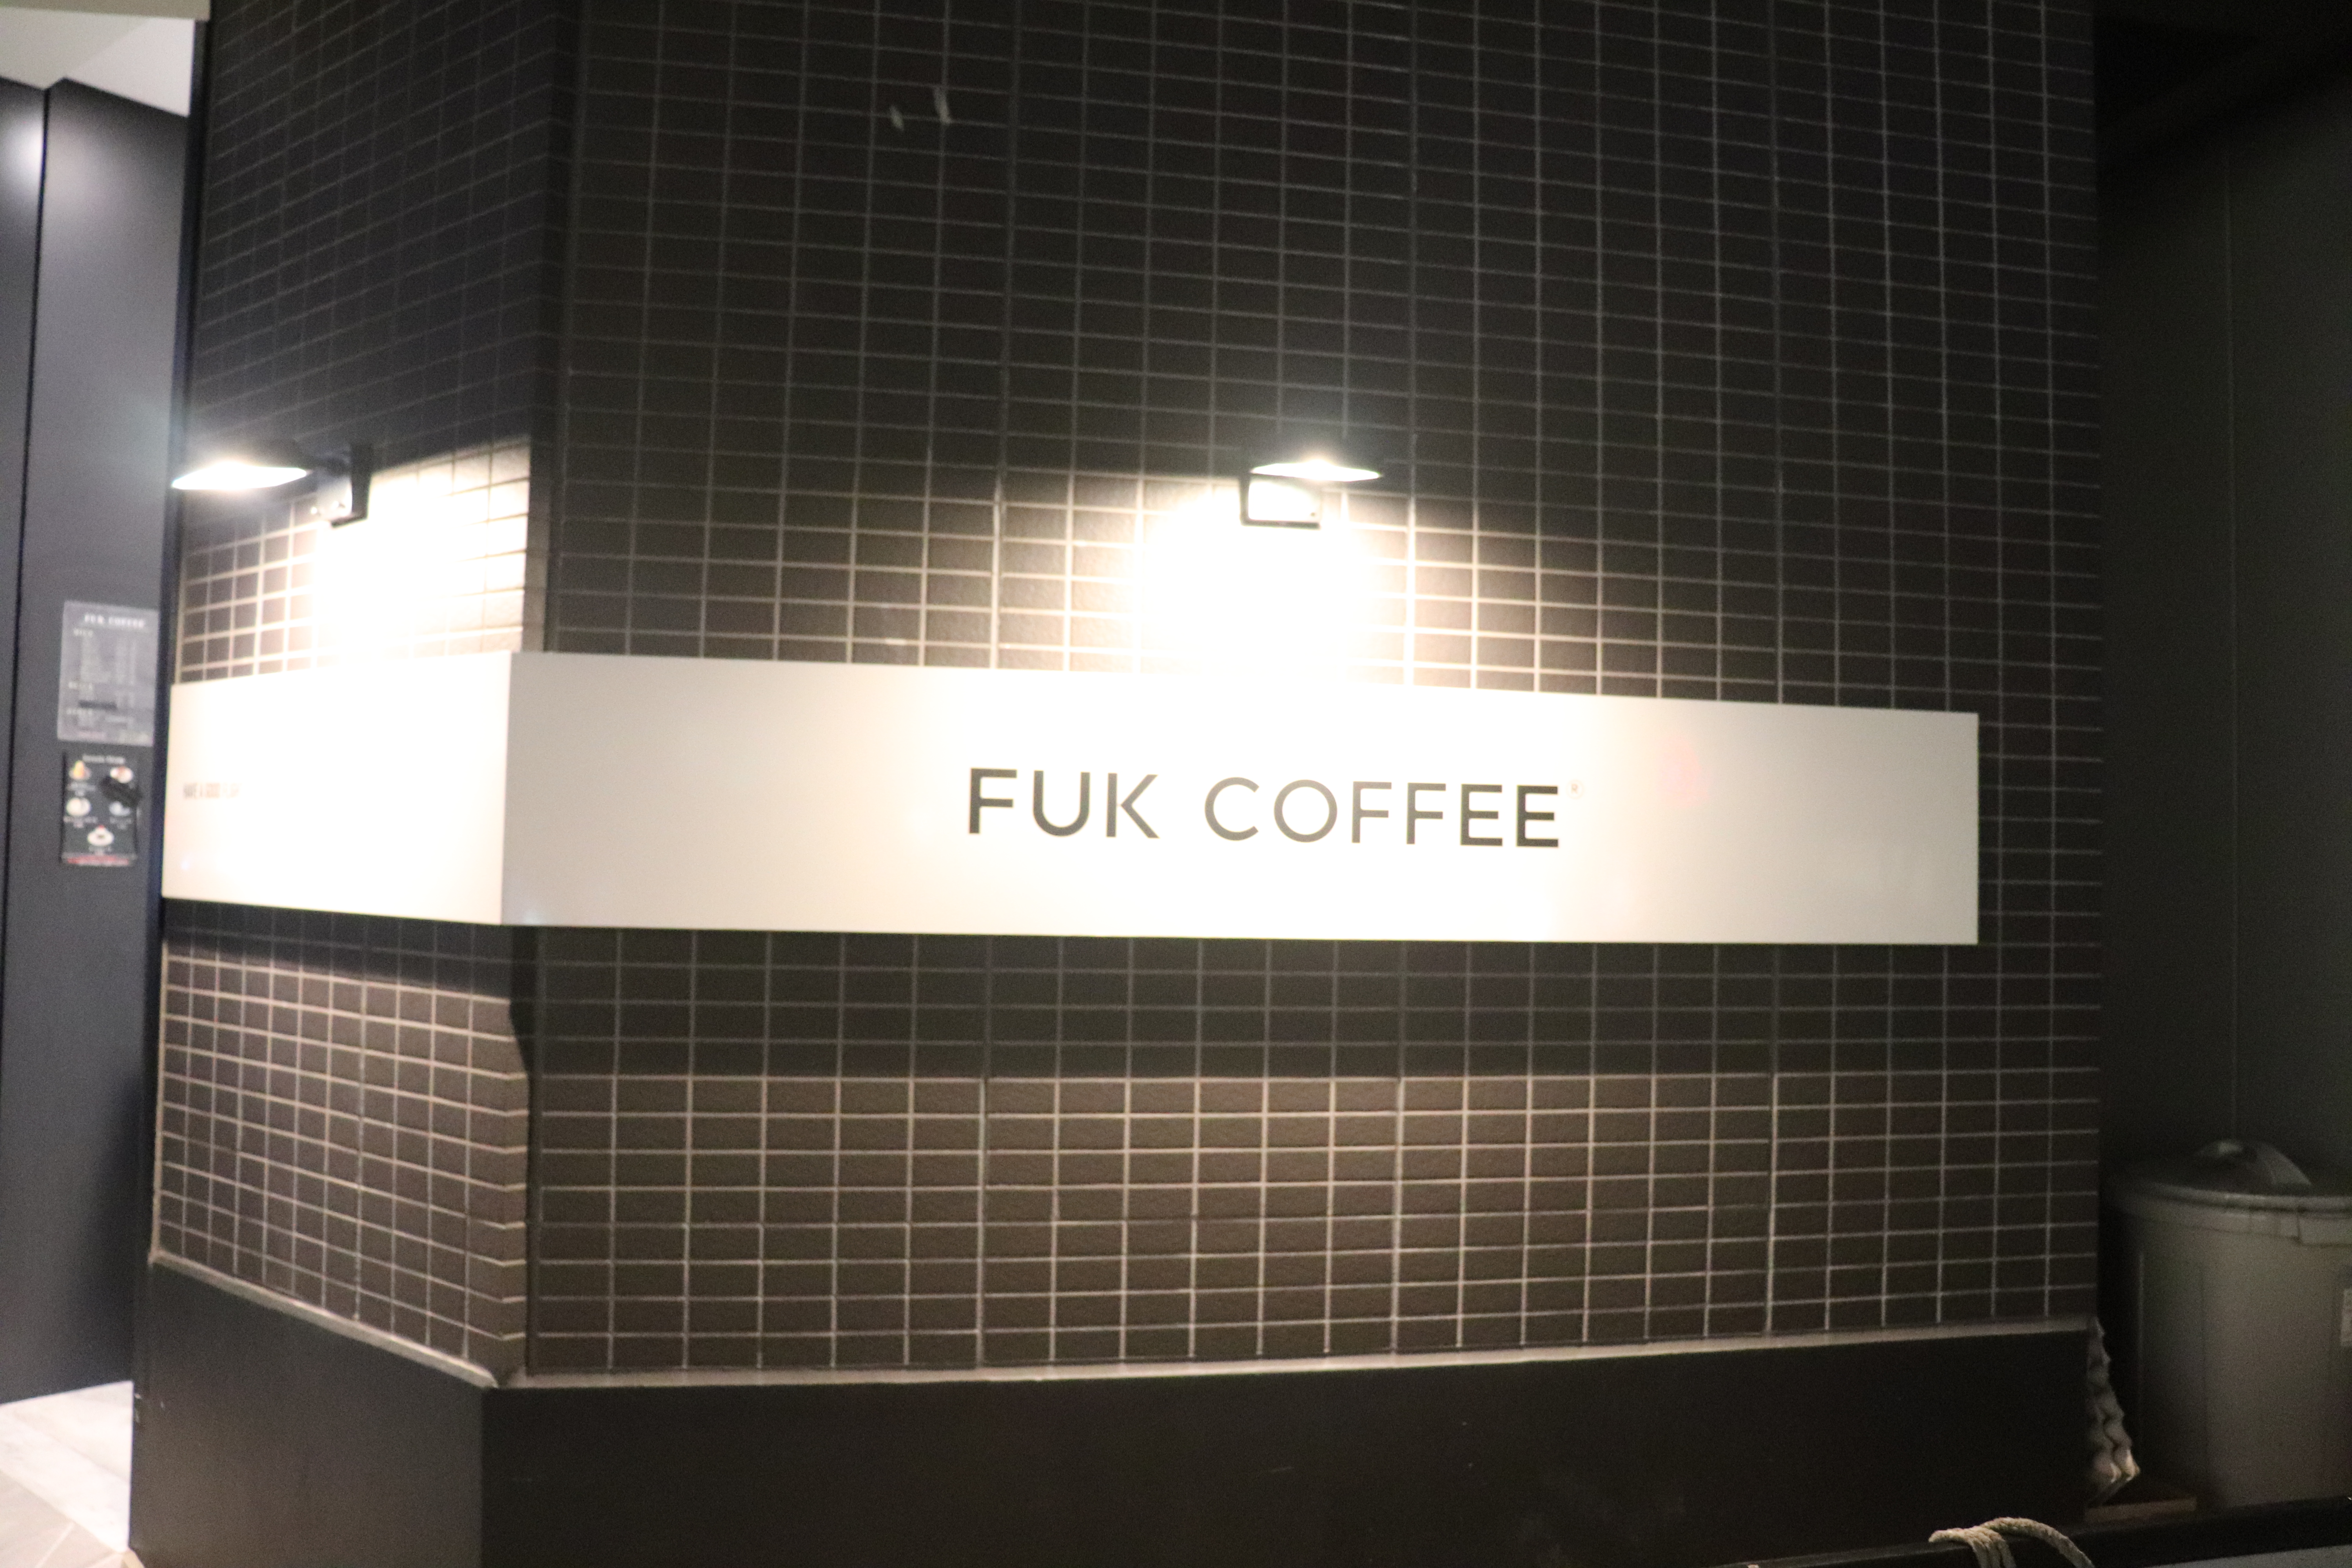 fun coffee 카페 외관